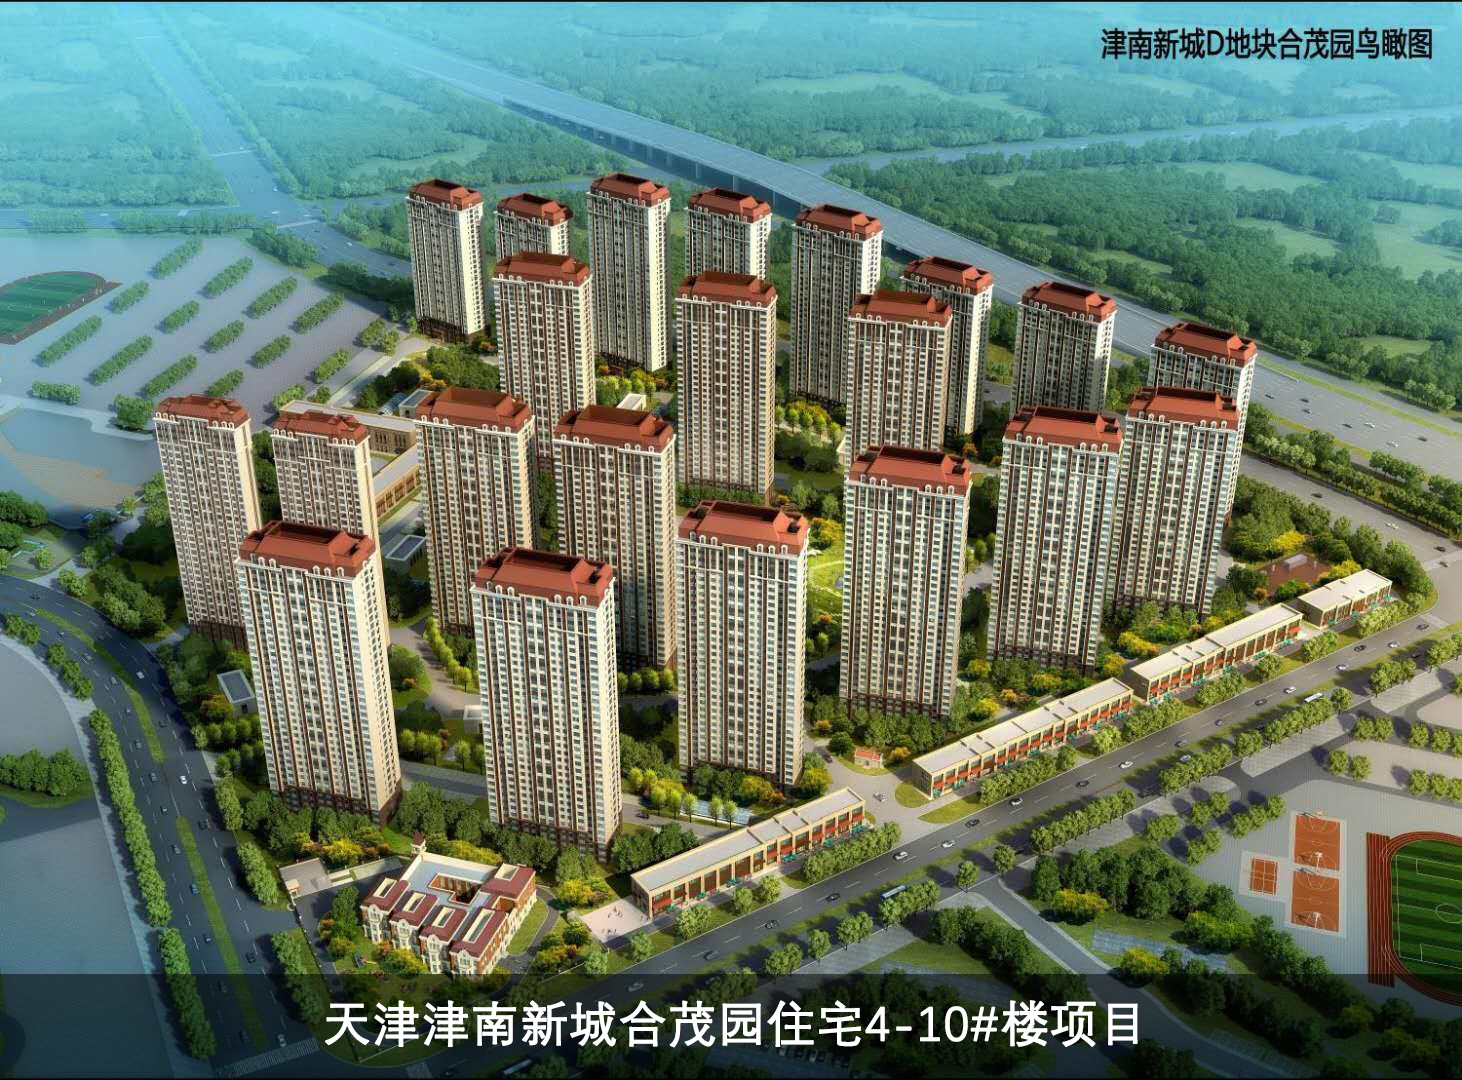 1.工程案例-天津津南新城合茂园住宅4-10-楼项目